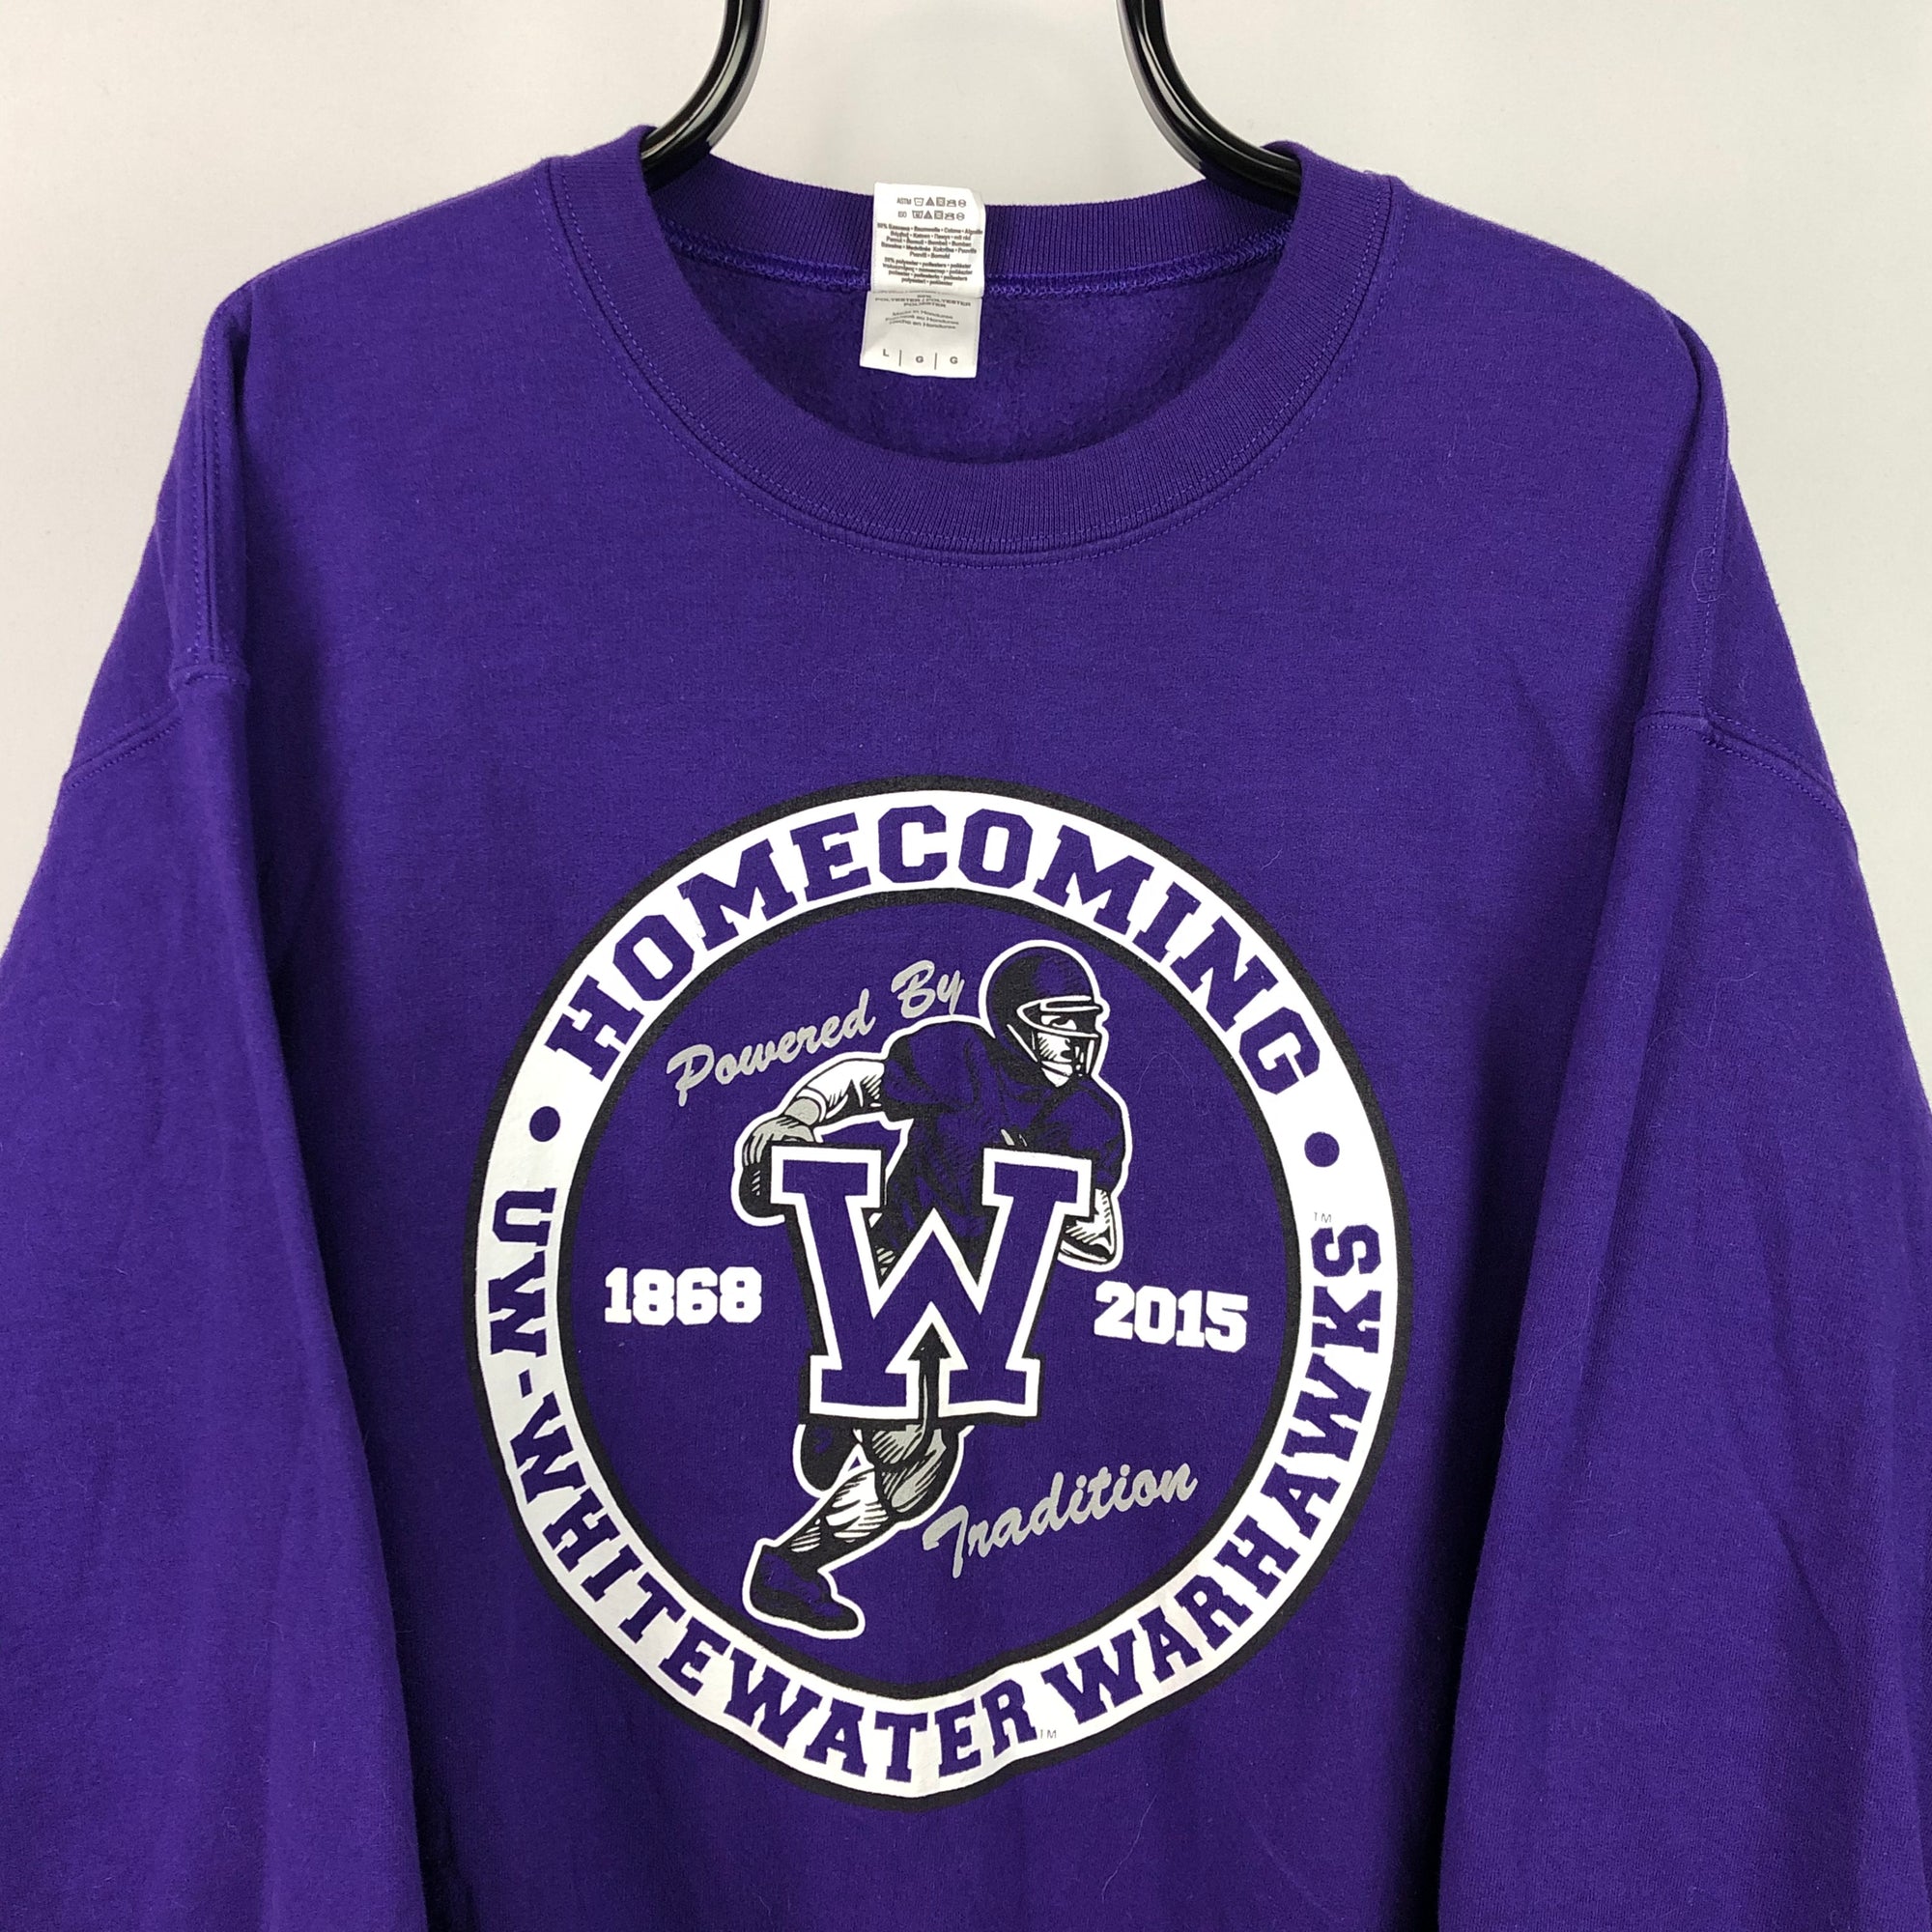 Vintage American Football College Sweatshirt in Purple - Men's Medium/Women's Large